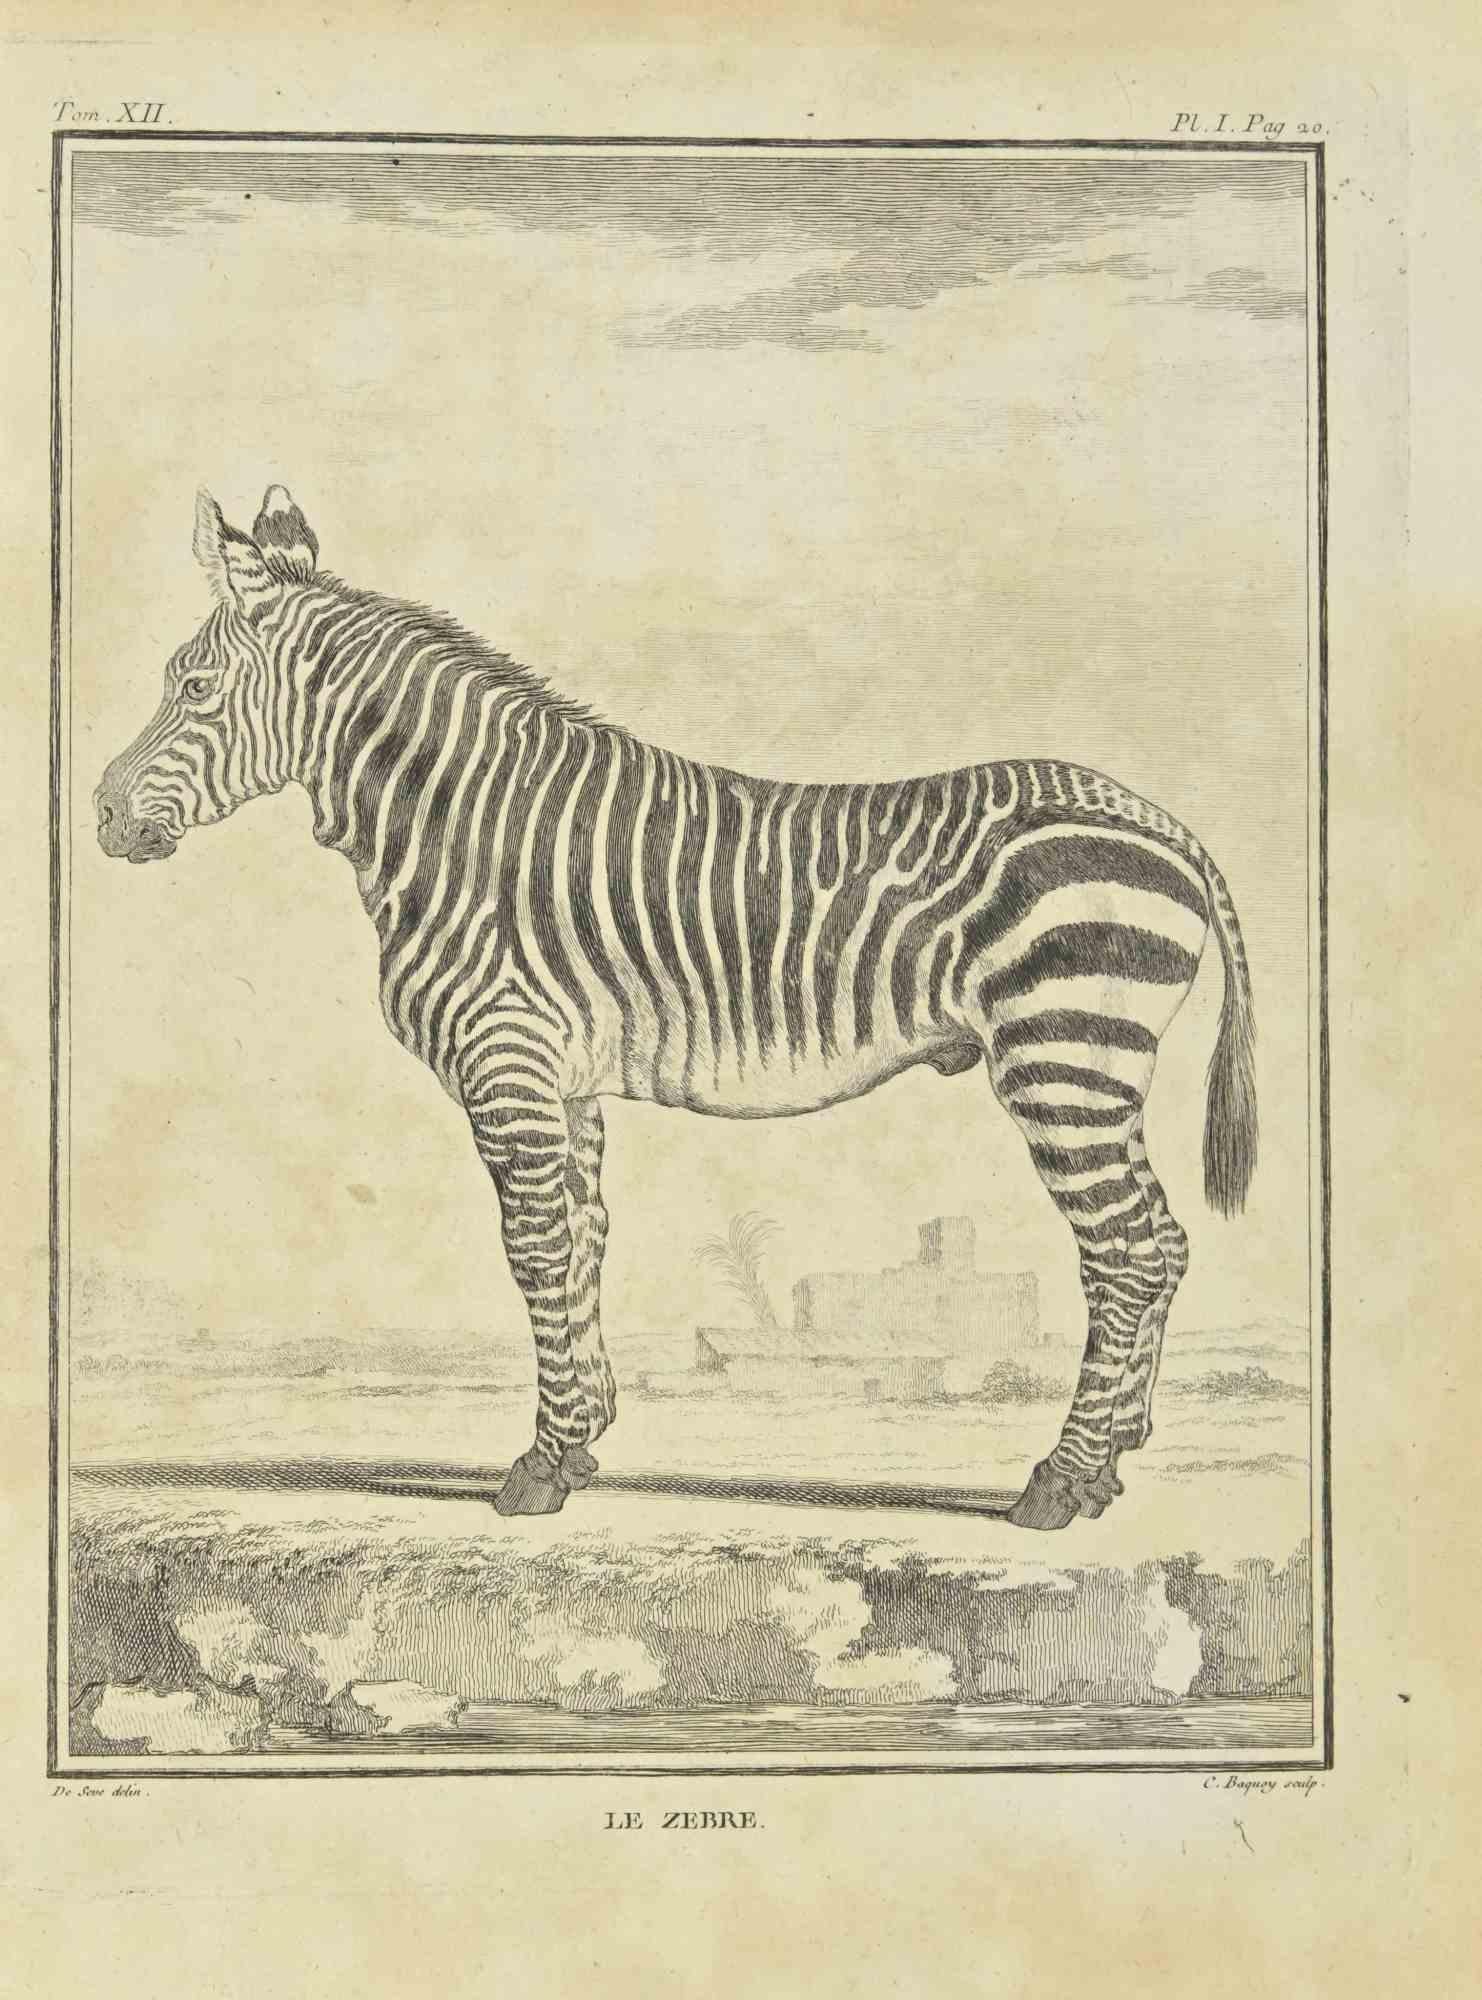 Das Zebra ist eine Radierung von Jean Charles Baquoy aus dem Jahr 1771.

Es gehört zu der Reihe "Histoire Naturelle de Buffon".

Die Signatur des Künstlers ist unten rechts eingraviert.

Guter Zustand mit leichten Stockflecken.